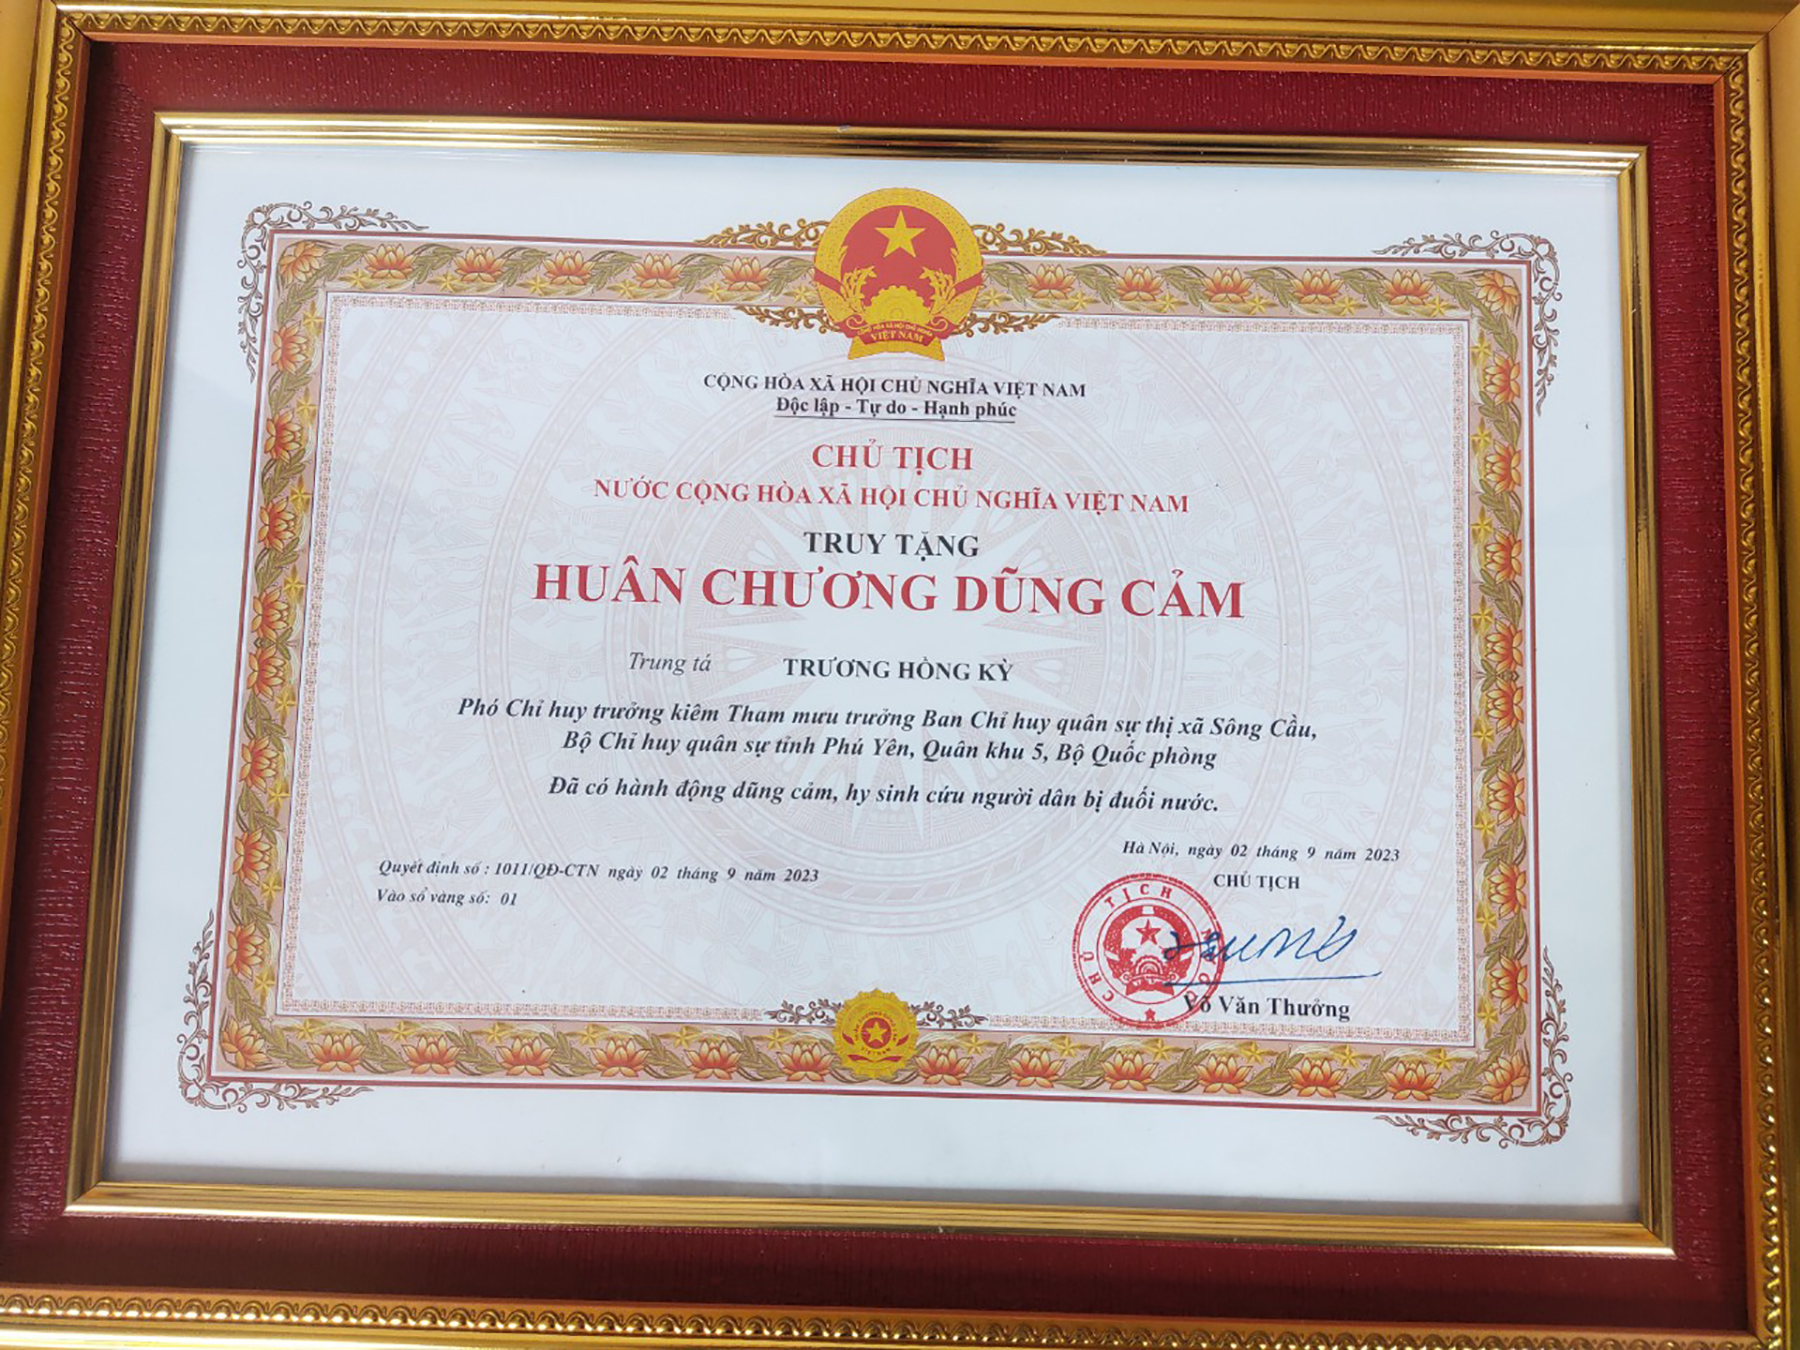 Ngày 2/9, Chủ tịch nước Võ Văn Thưởng ký Quyết định số 1011/QĐ-CTN truy tặng Huân chương Dũng cảm cho Trung tá Trương Hồng Kỳ.